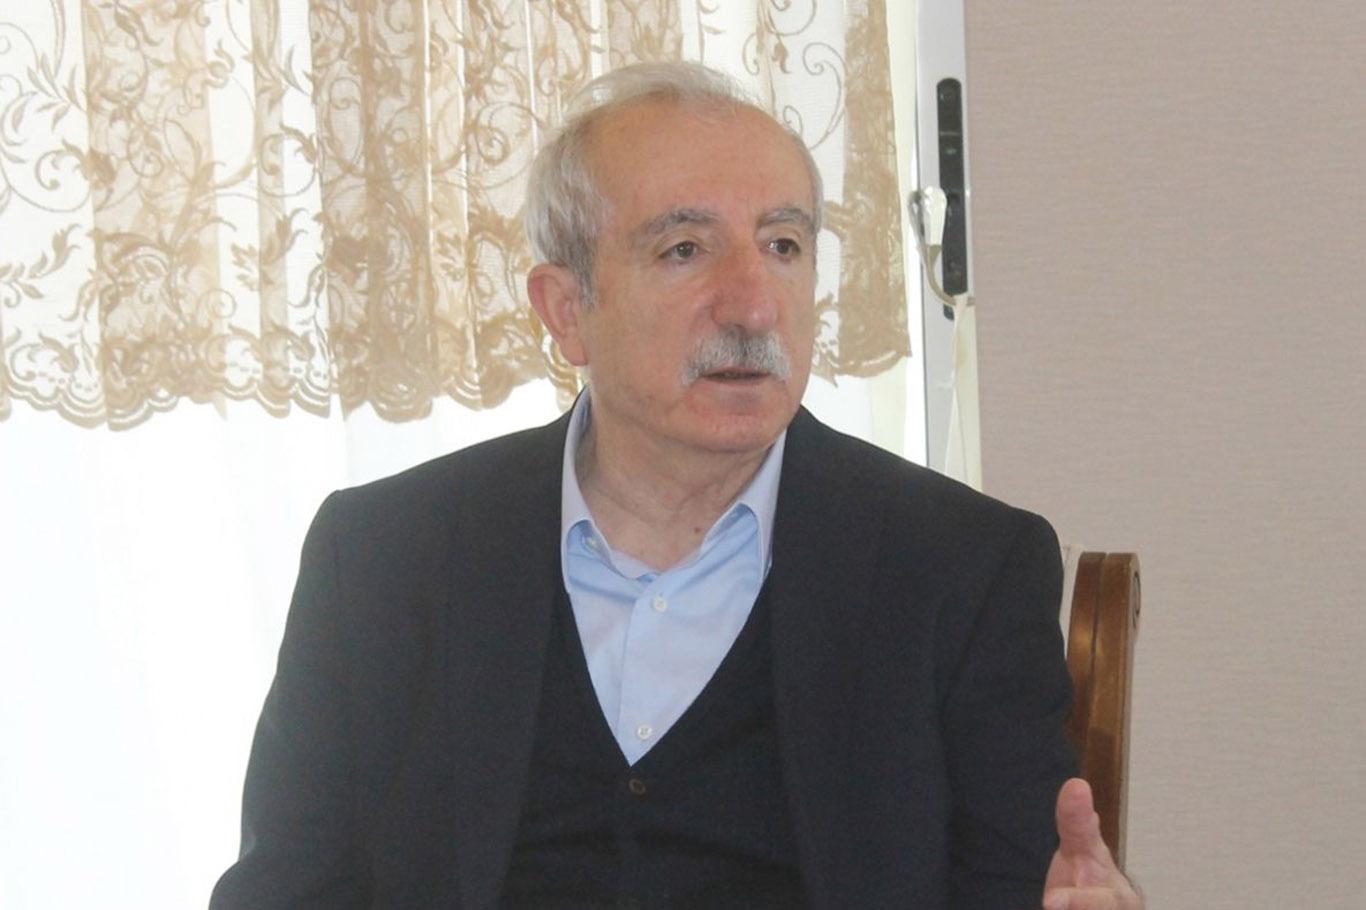 Mardin eski milletvekili Miroğlu: “Elektrik meselesi Bakanlar Kurulu’nda görüşülecek”